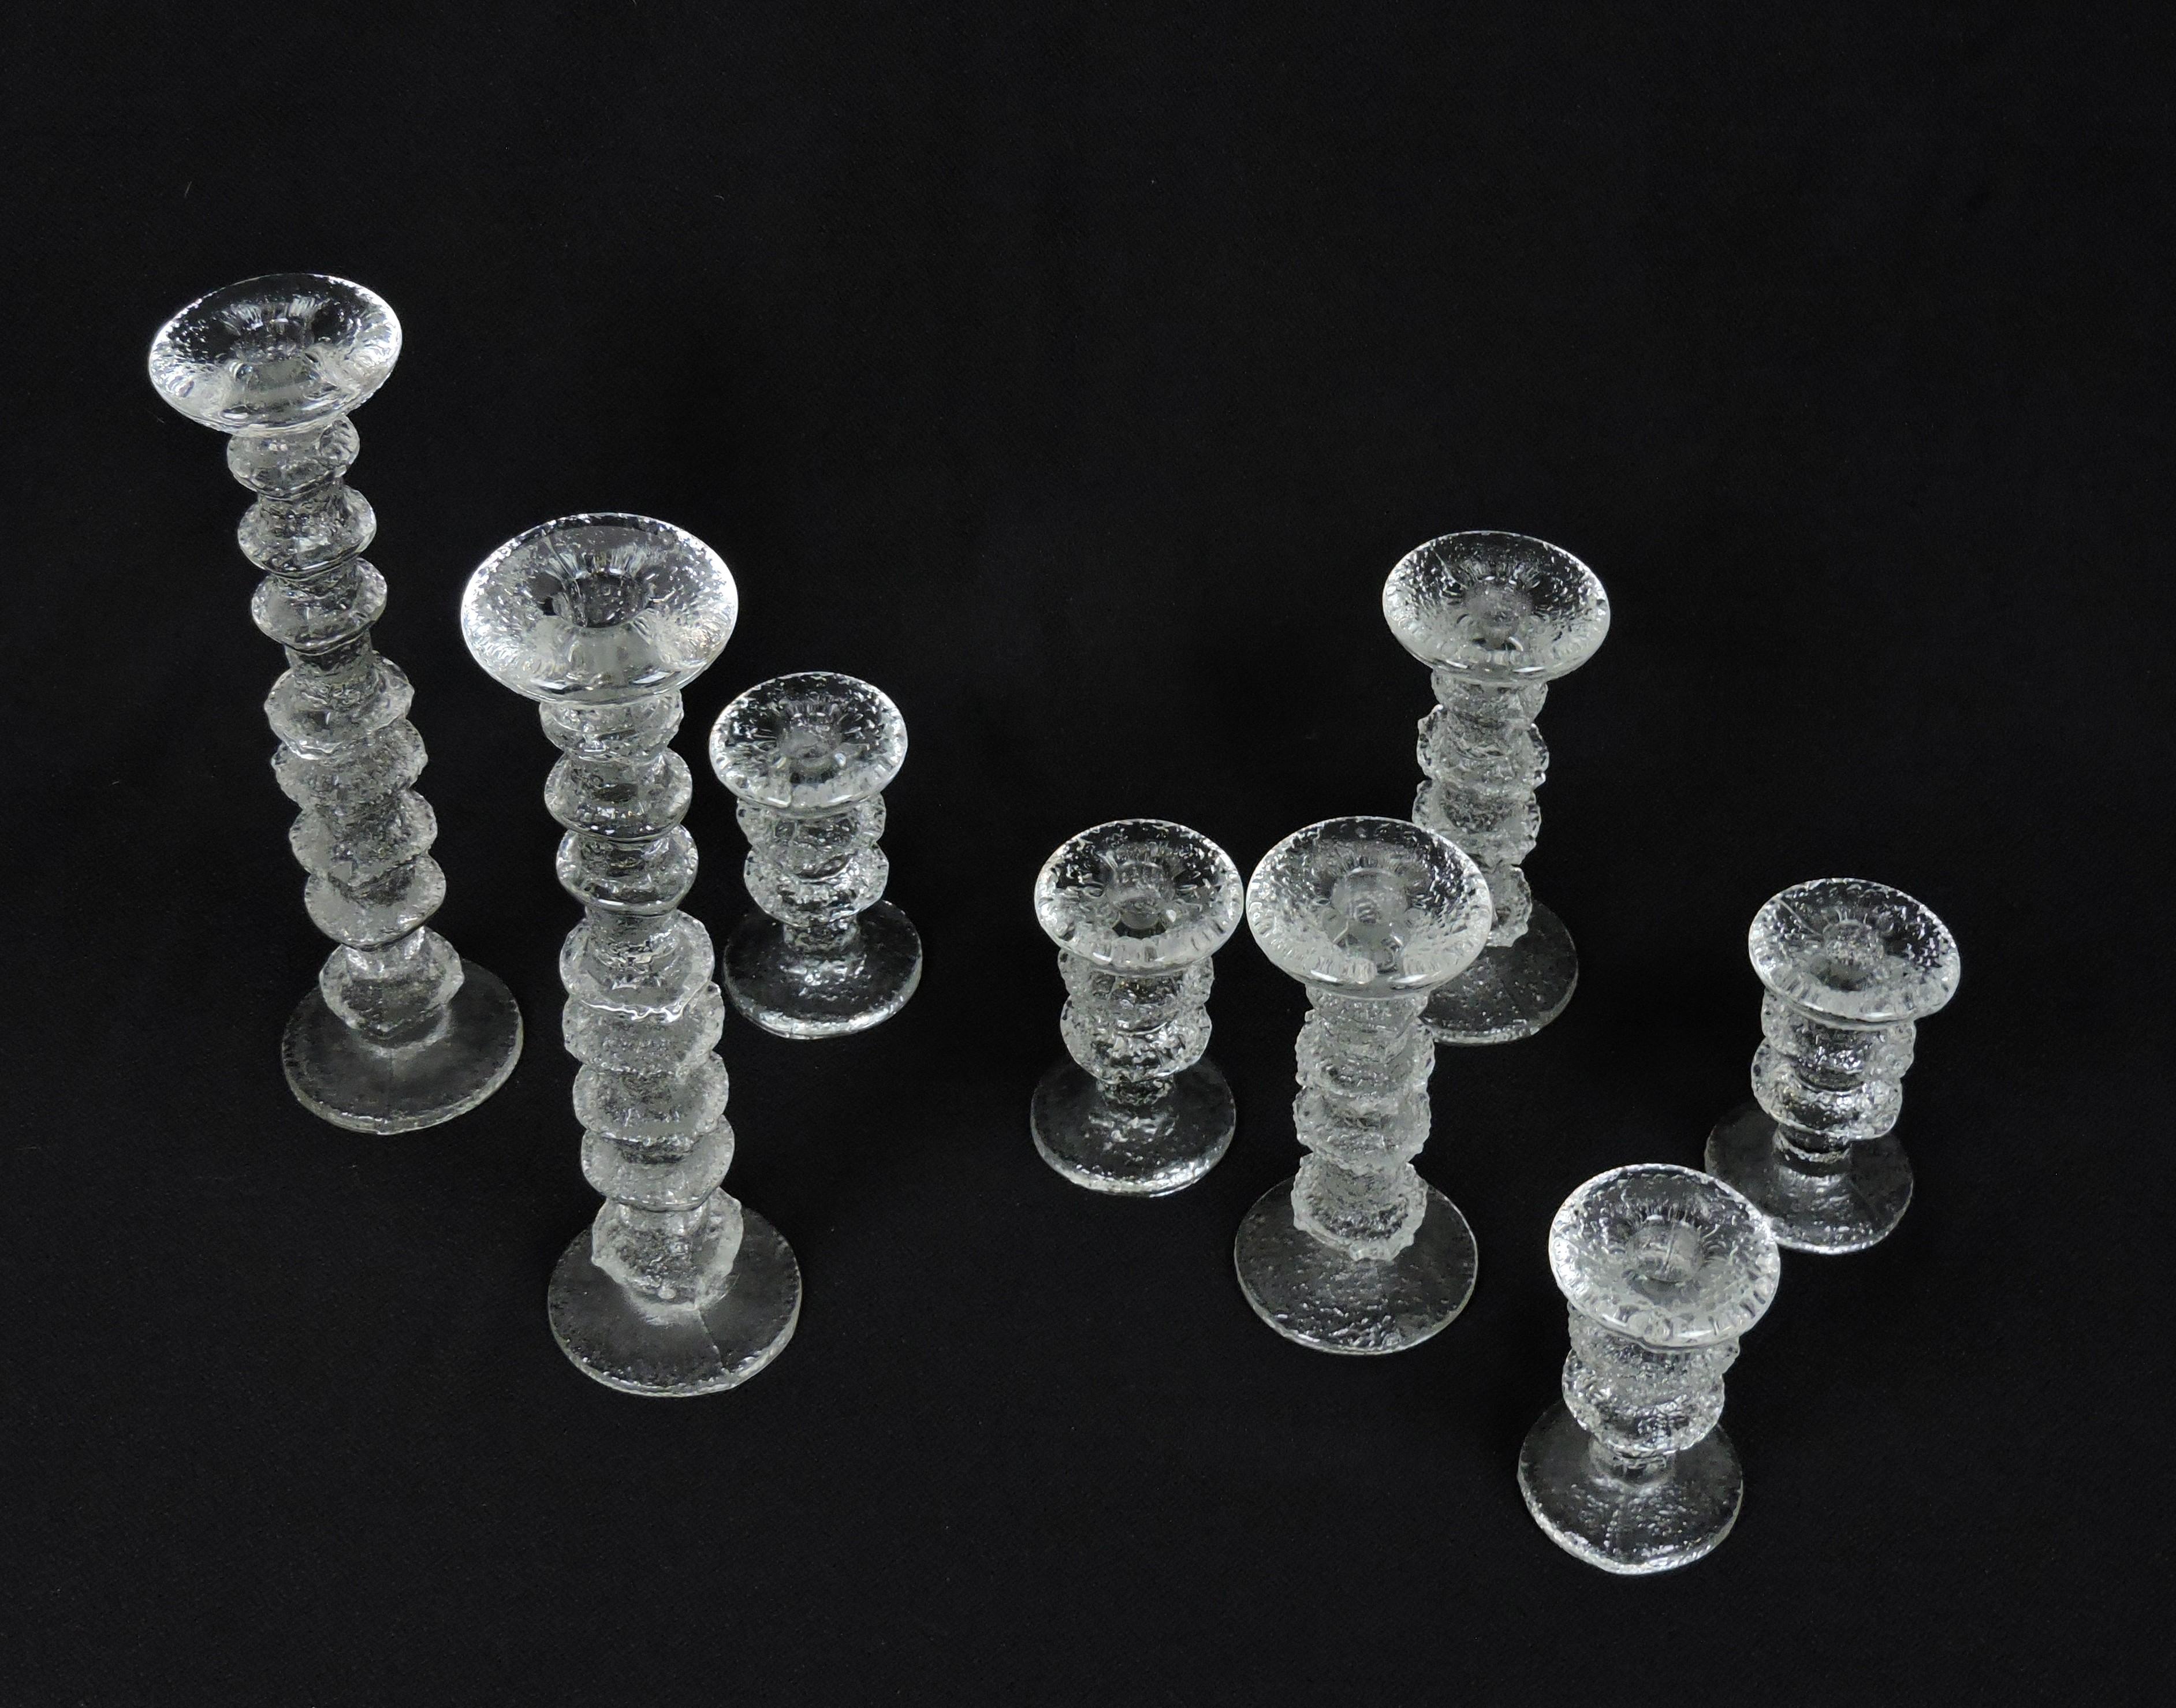 Magnifique ensemble de 8 chandeliers en verre Festivo conçus par Timo Sarpaneva et fabriqués en Finlande par Iittala. Cet ensemble comprend deux bougeoirs de 12 5/8 pouces de haut (8 anneaux), deux de 7 1/8 pouces de haut (4 anneaux) et quatre de 4